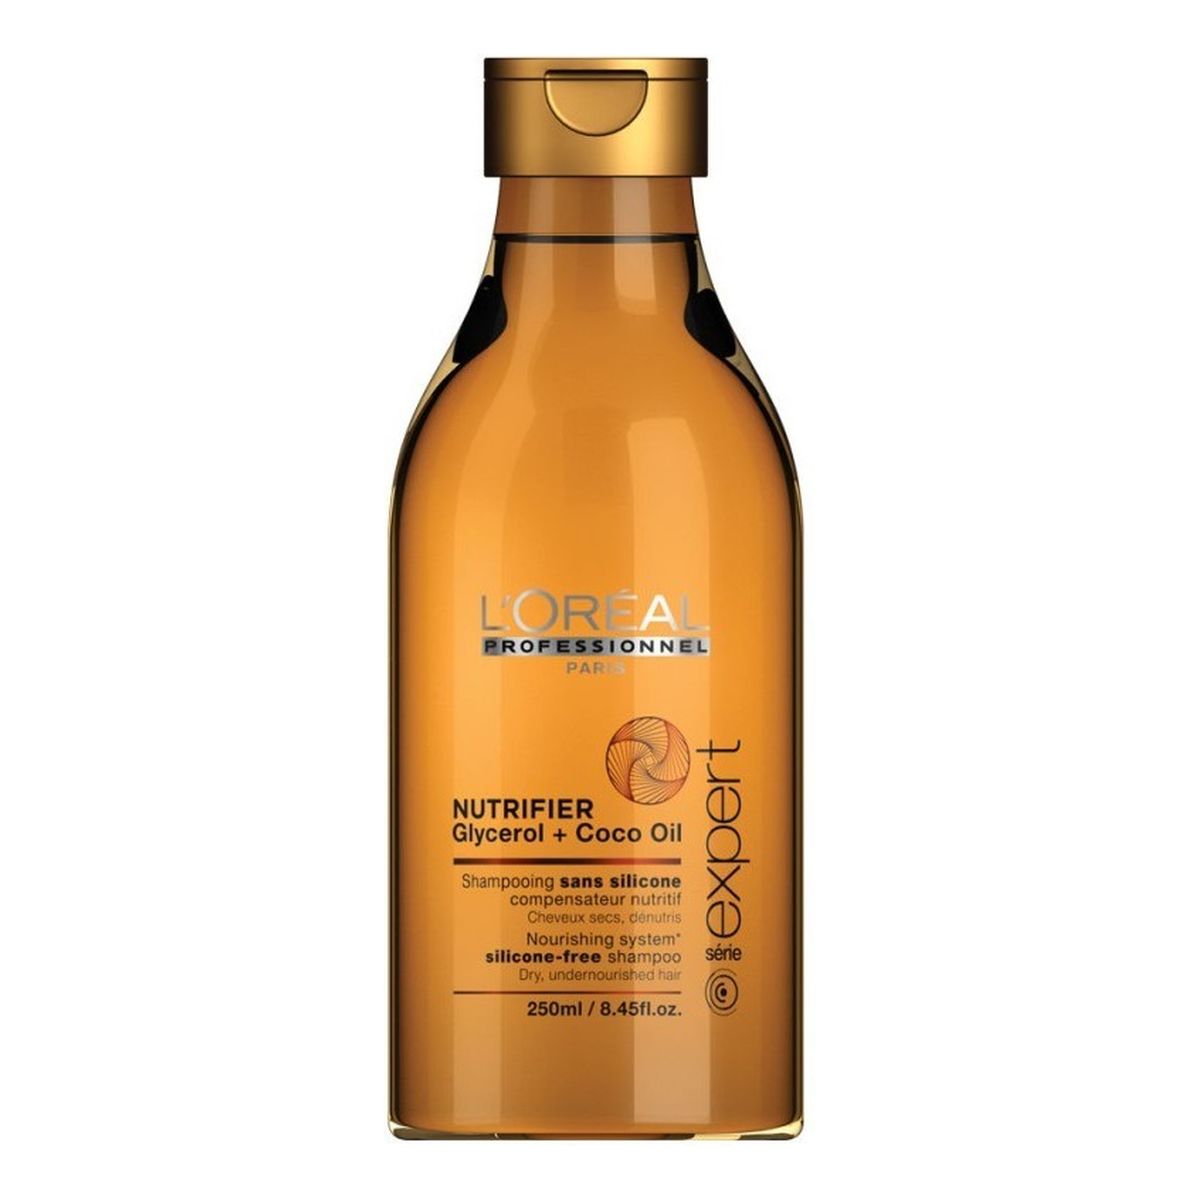 L`oreal Expert Nutrifier Glycerol+Coco Oil Odżywczy szampon do włosów suchych 250ml